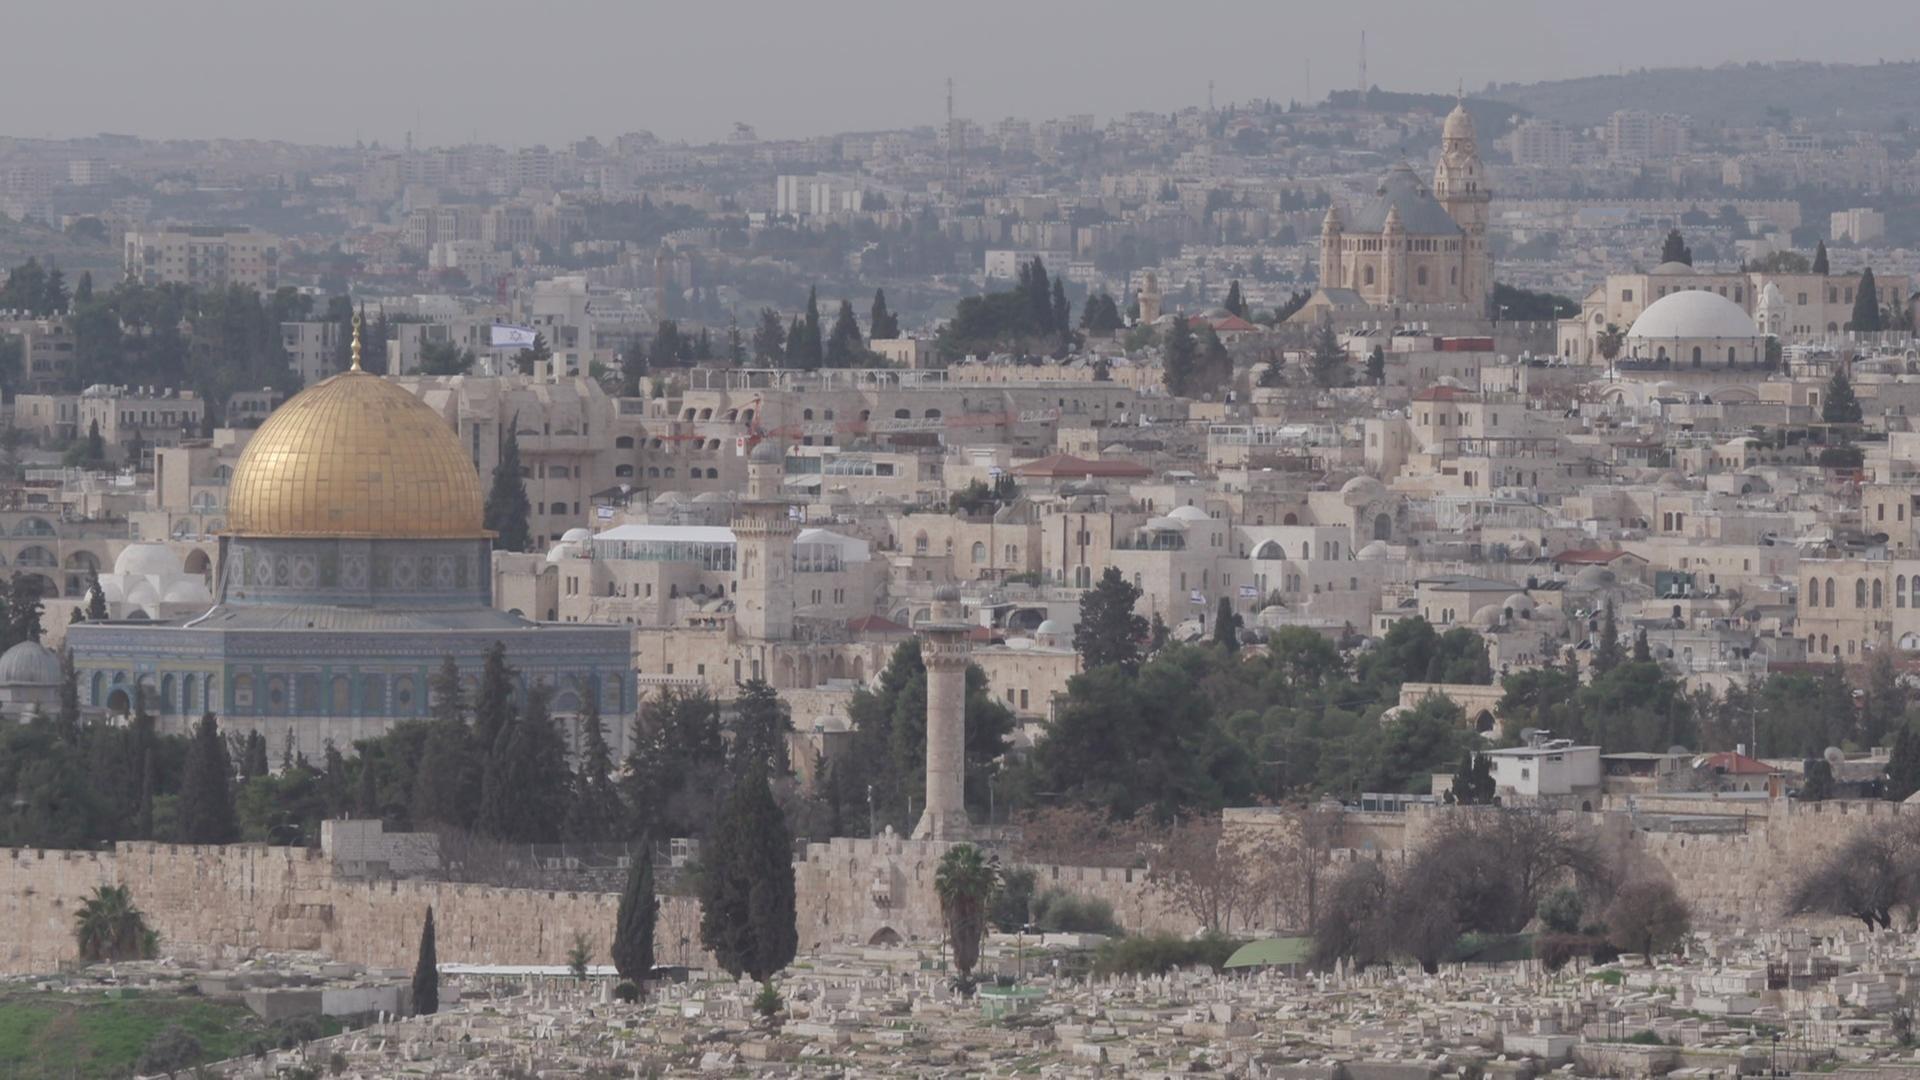 "Jerusalem - ewiger Kampf um die Heilige Stadt": Jerusalem mit dem ältesten muslimischen Bauwerk: dem Felsendom und seiner goldenen Kuppel.